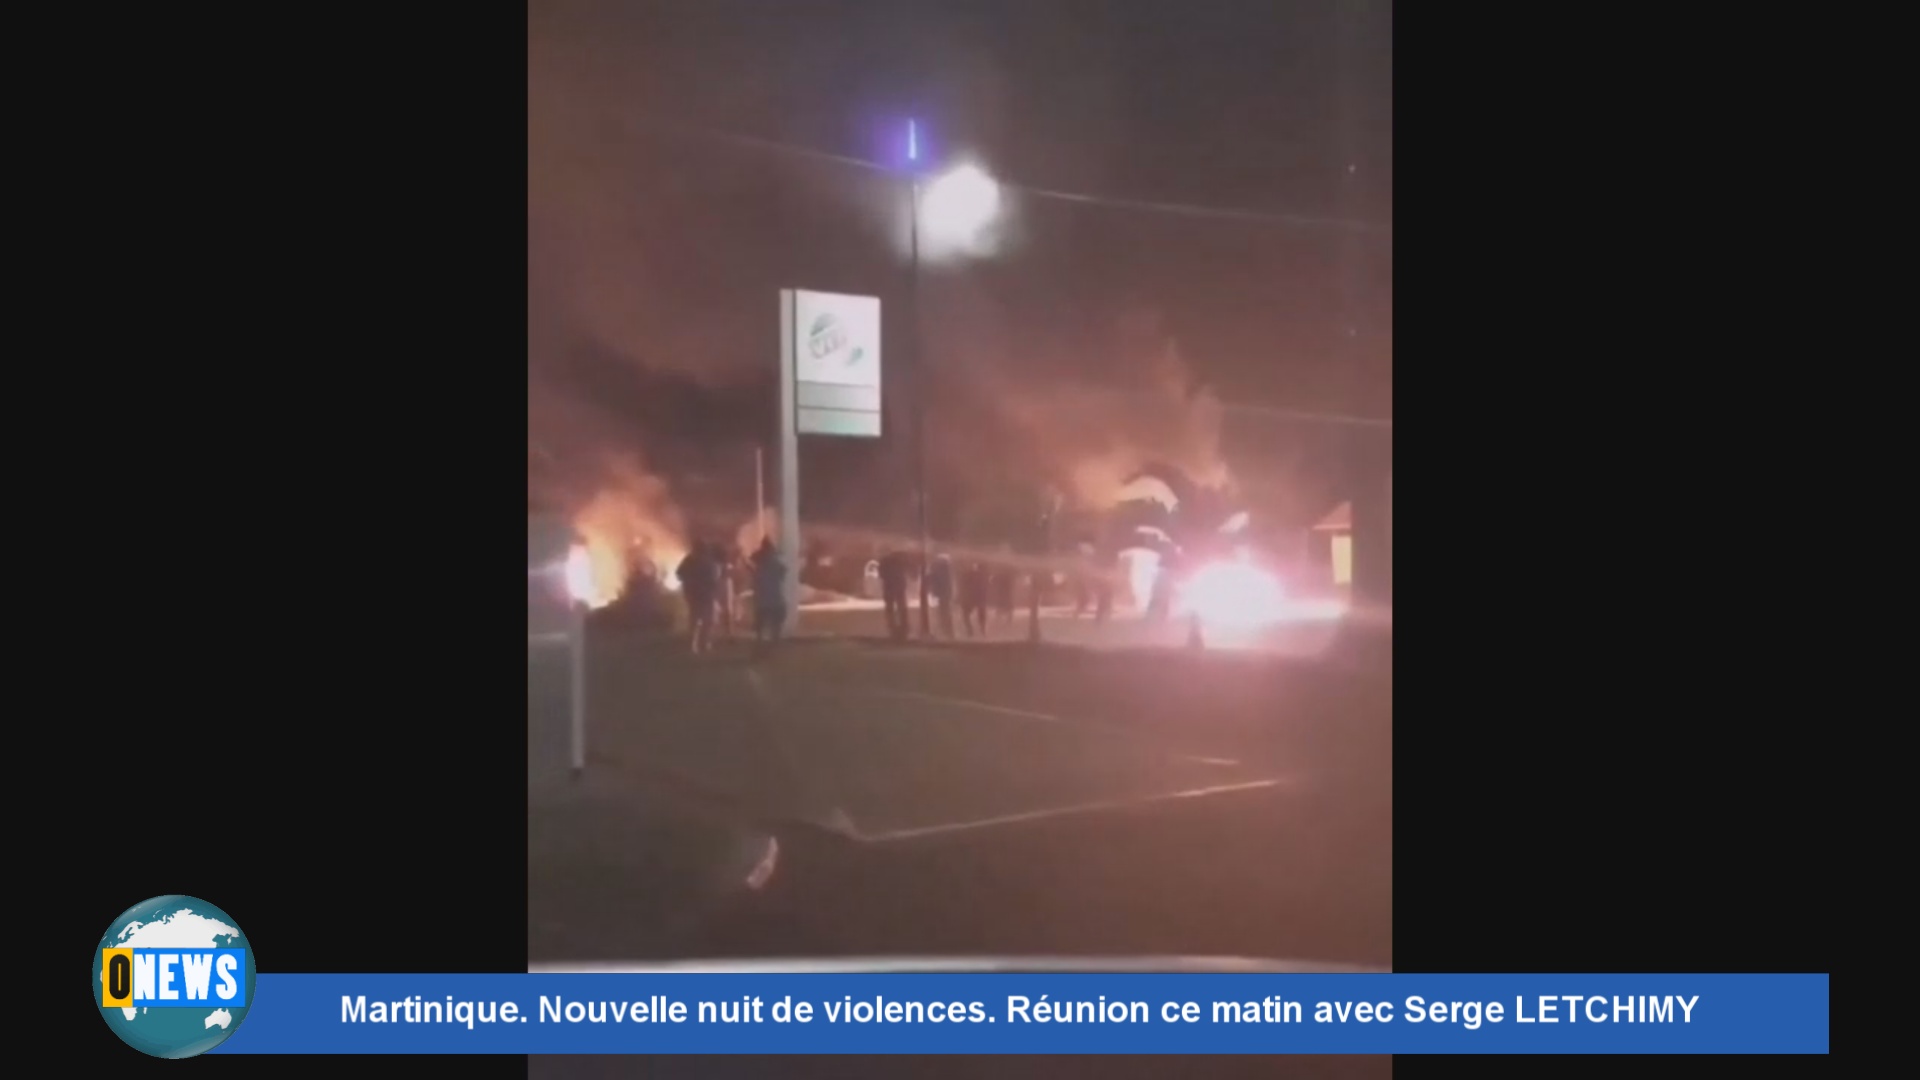 [Vidéo] Onews Martinique. Nouvelle nuit de violences. Réunion ce matin avec Serge LETCHIMY